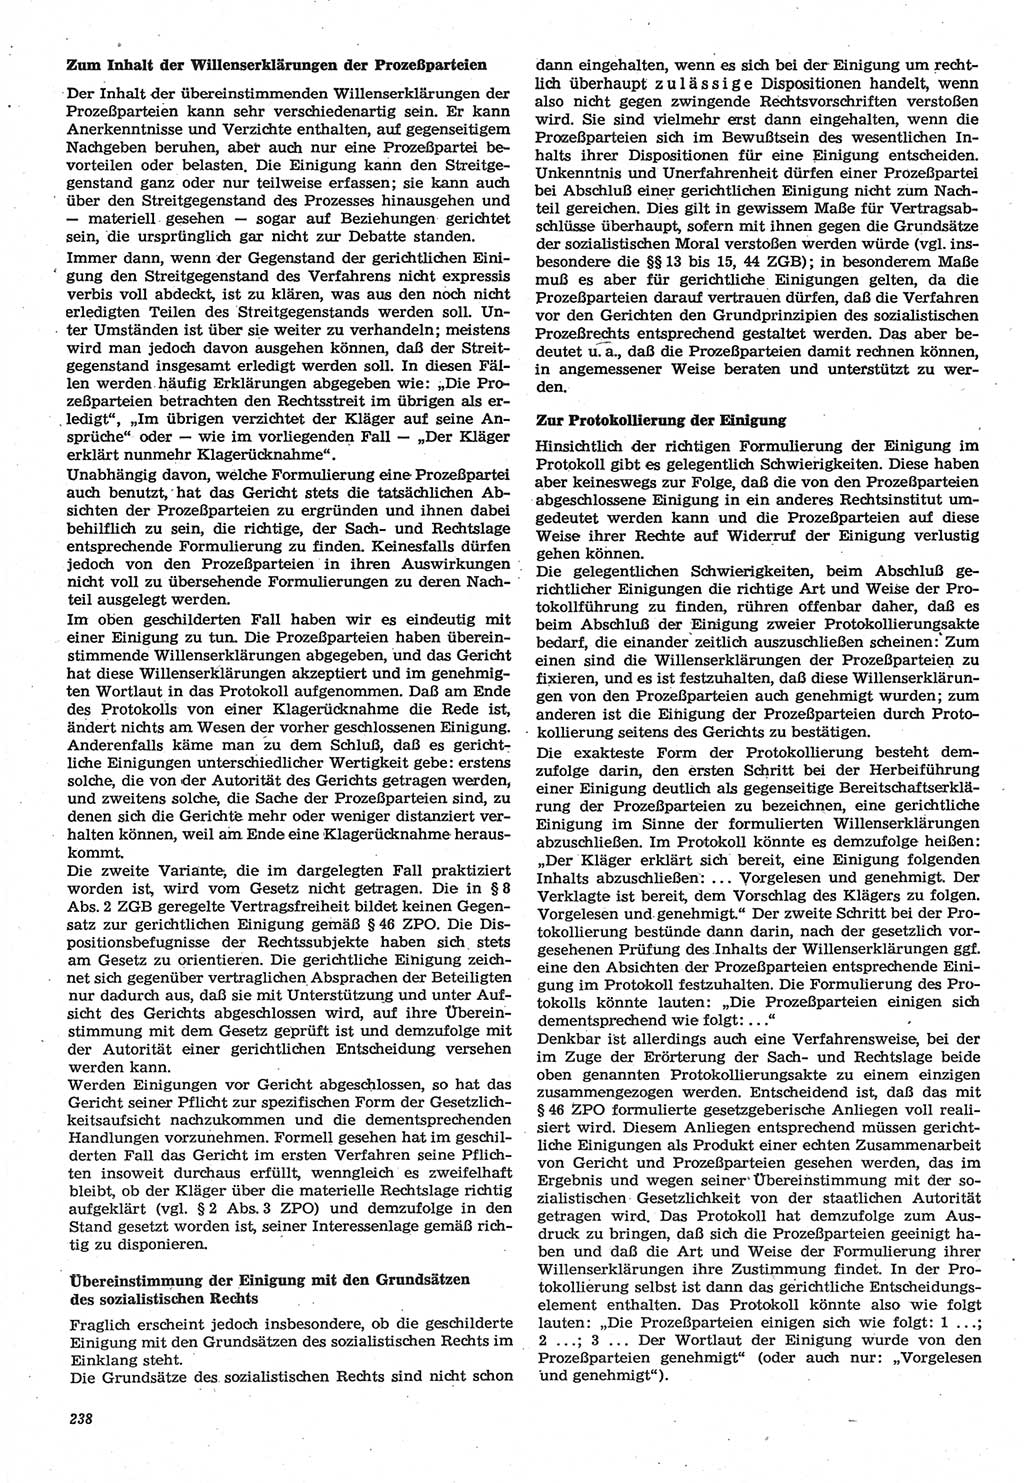 Neue Justiz (NJ), Zeitschrift für Recht und Rechtswissenschaft-Zeitschrift, sozialistisches Recht und Gesetzlichkeit, 31. Jahrgang 1977, Seite 238 (NJ DDR 1977, S. 238)